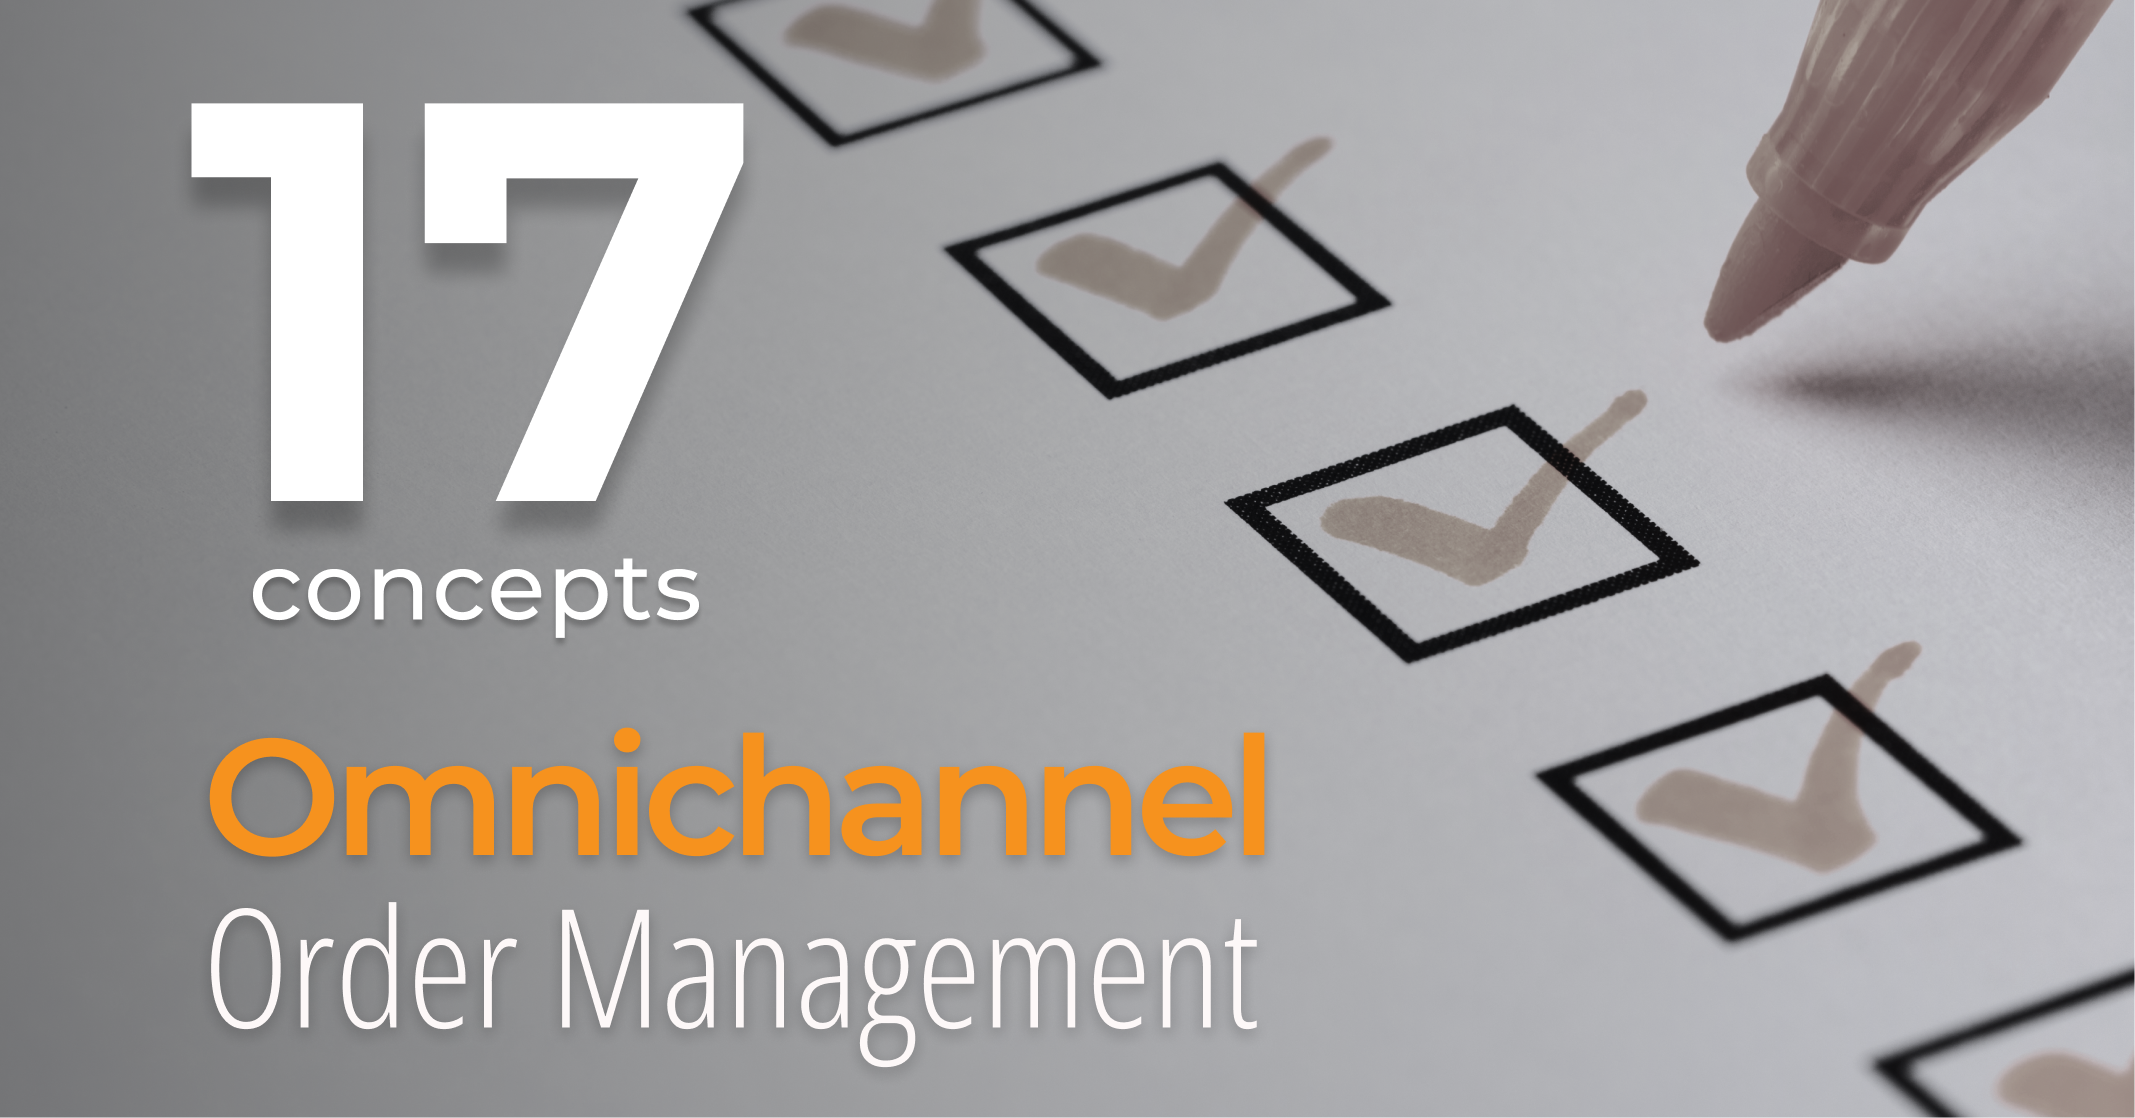 17 Key Concepts of Omnichannel Order Management